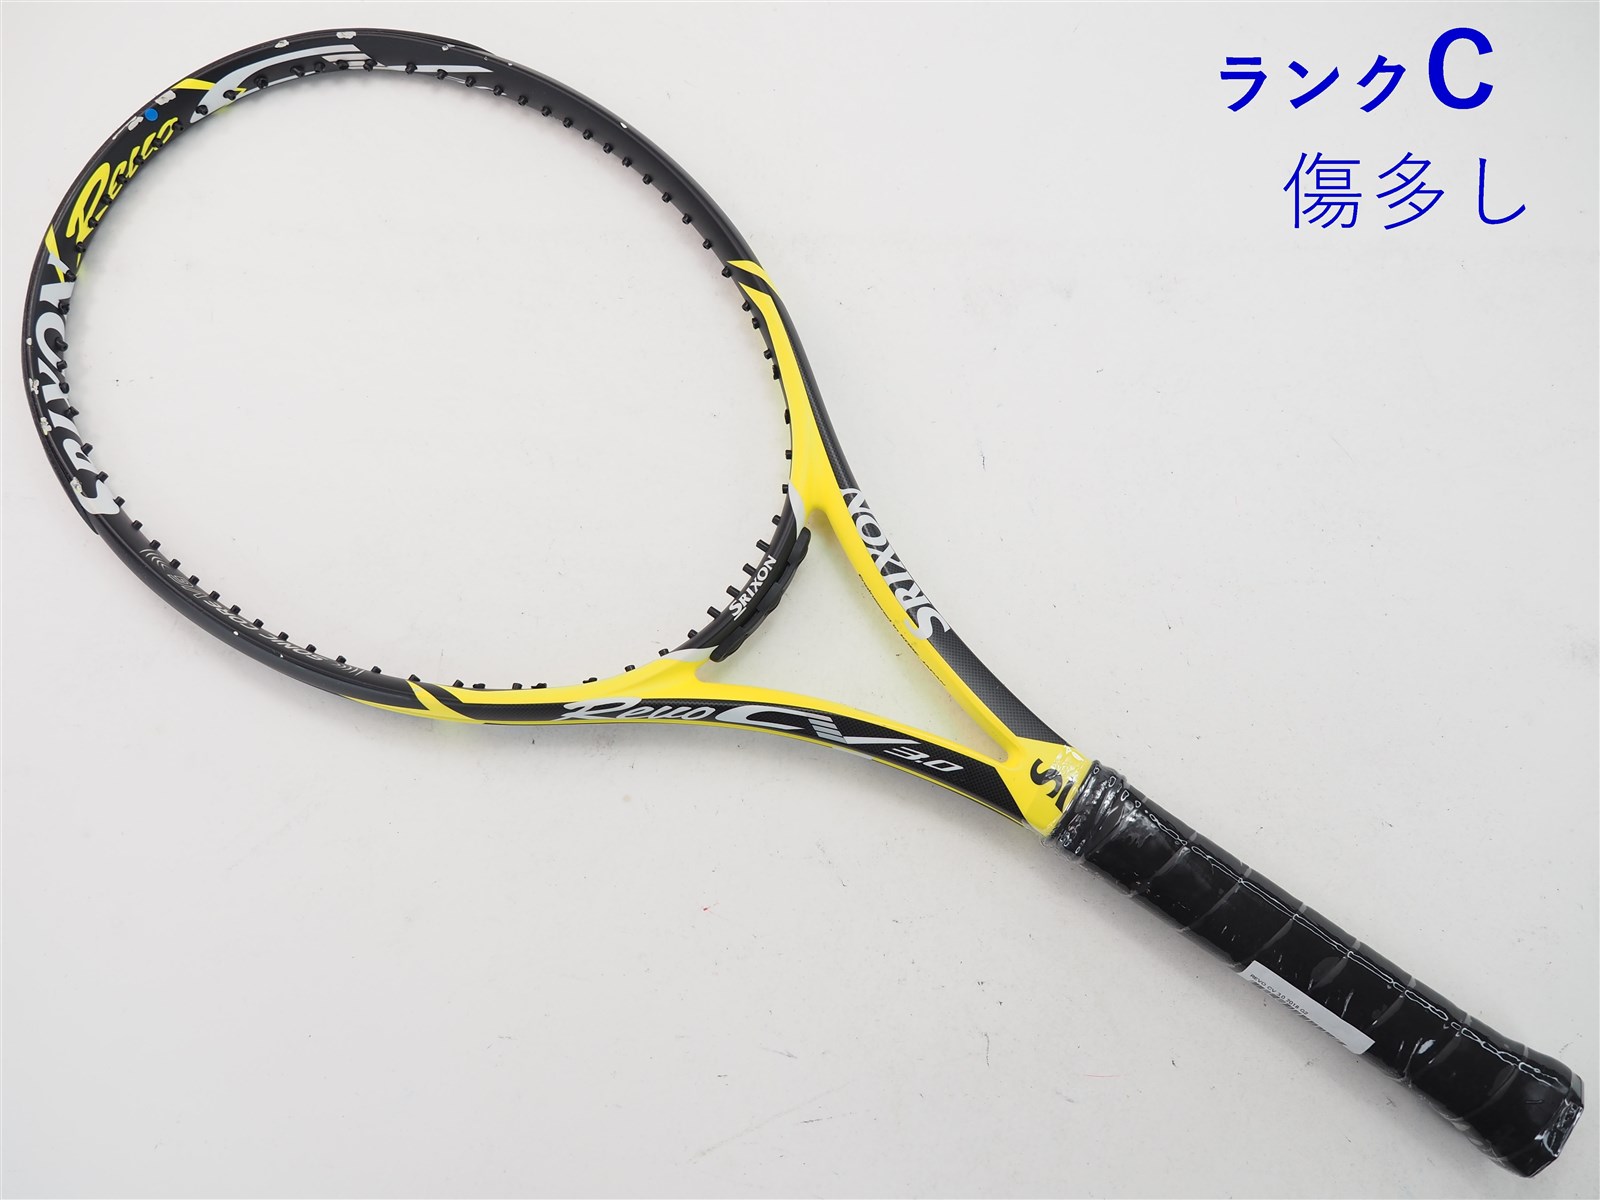 スリクソン REVO CS 10.0(G2) - テニス